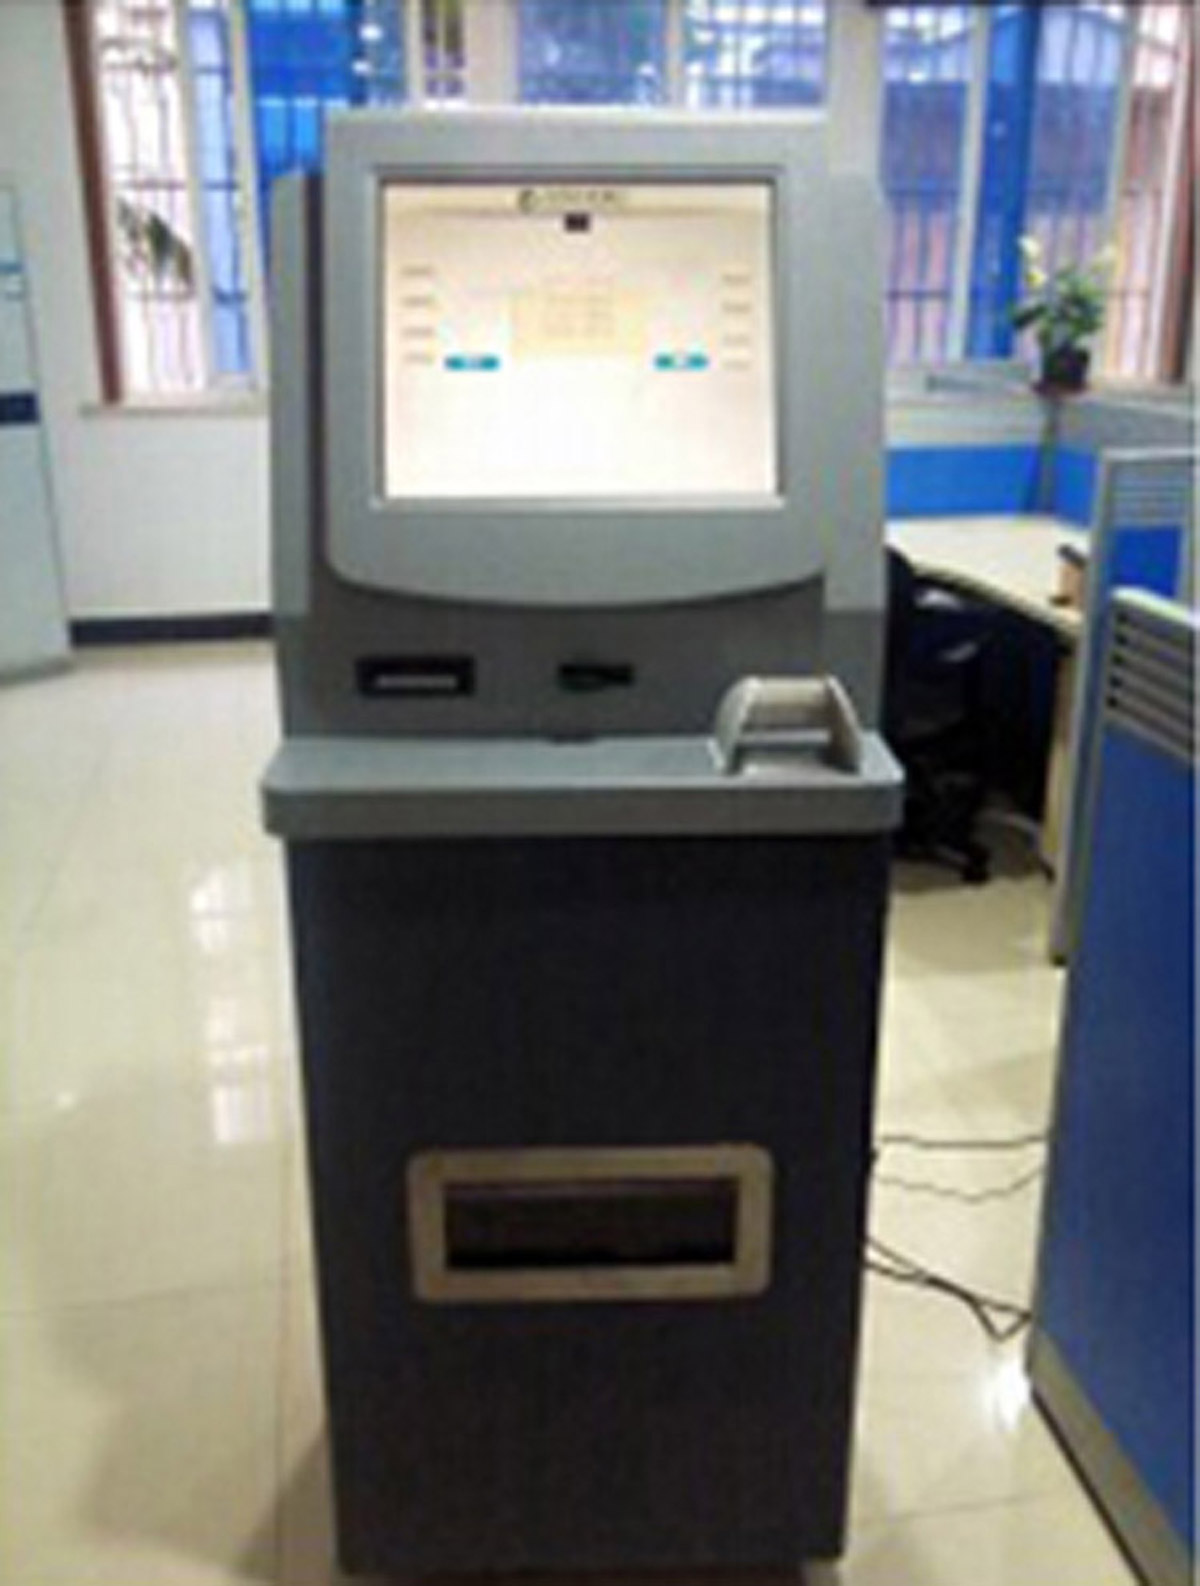 乌当科普教育模拟ATM提款操作